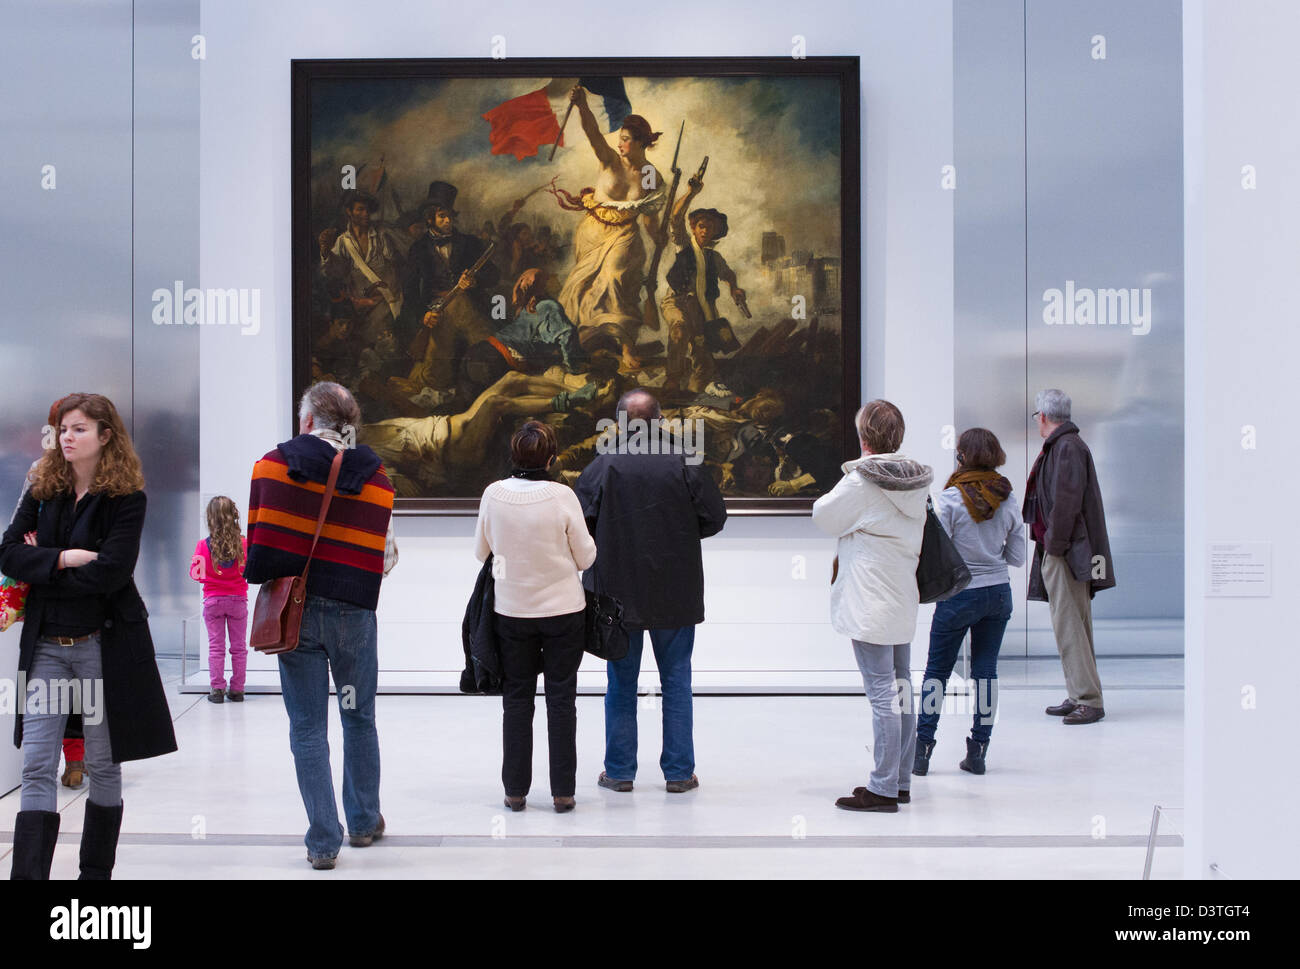 La libertà che guida il popolo di Eugène Delacroix, raffigurante la rivoluzione di luglio del 1830, alla galleria Louvre Lens, Francia settentrionale Foto Stock